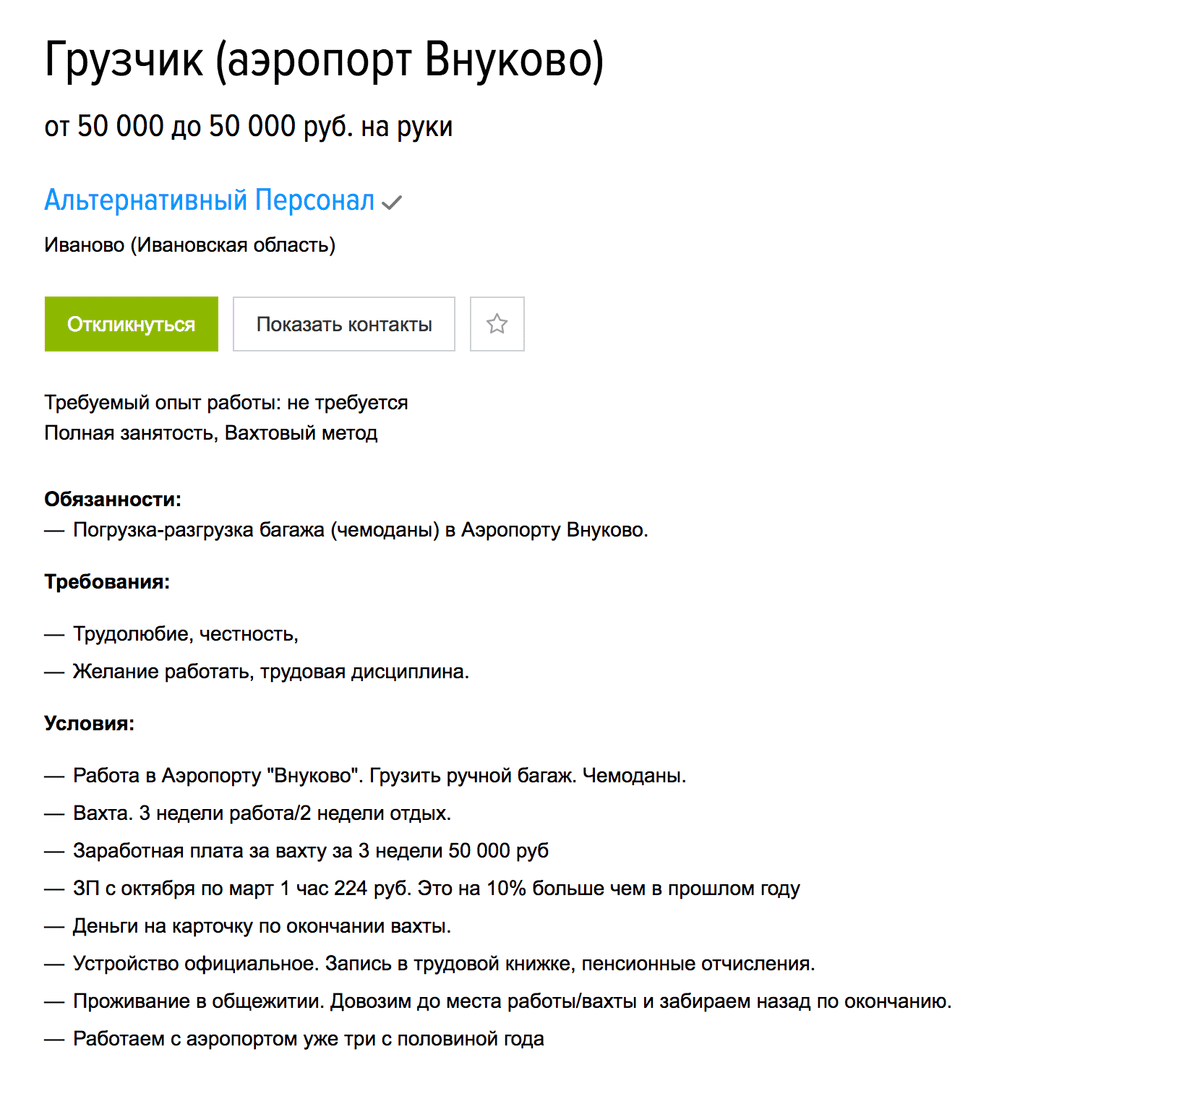 Грузчик в аэропорту Внуково может заработать за три недели 50 тысяч. Опыт работы не нужен. Вакансия на «Хедхантере»